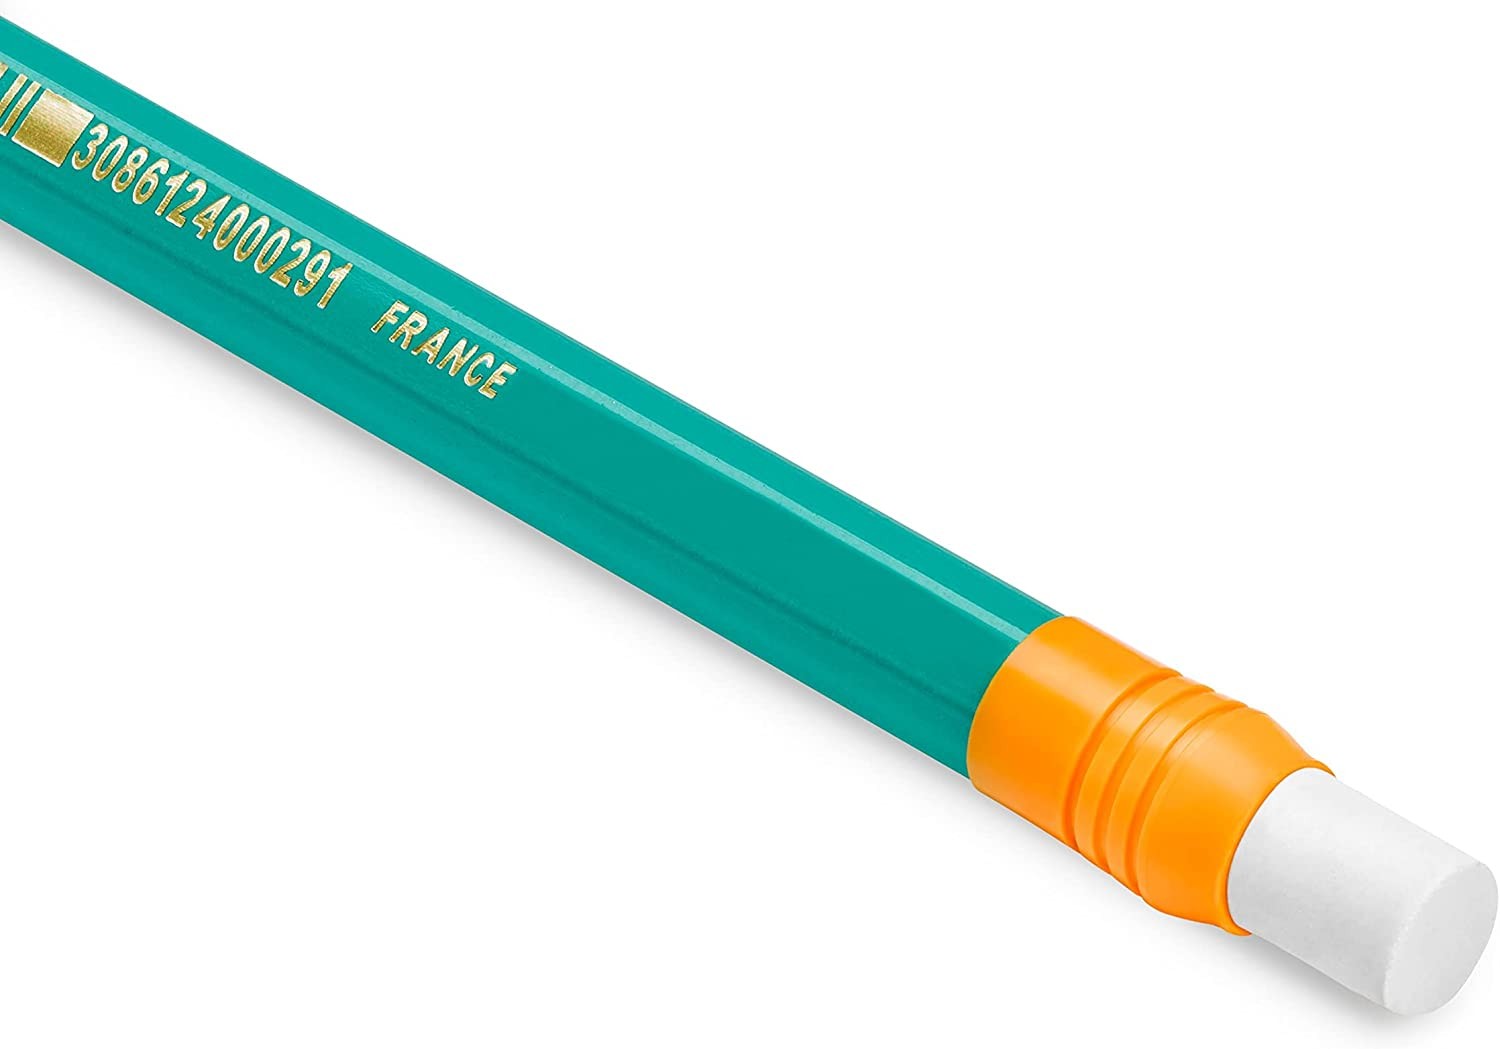 BIC Ecriture Evolution Fluo Crayons à Papier Gris avec Gomme Intégrée - HB,  Corps Couleur Assortie, Blister de 12 : : Fournitures de bureau